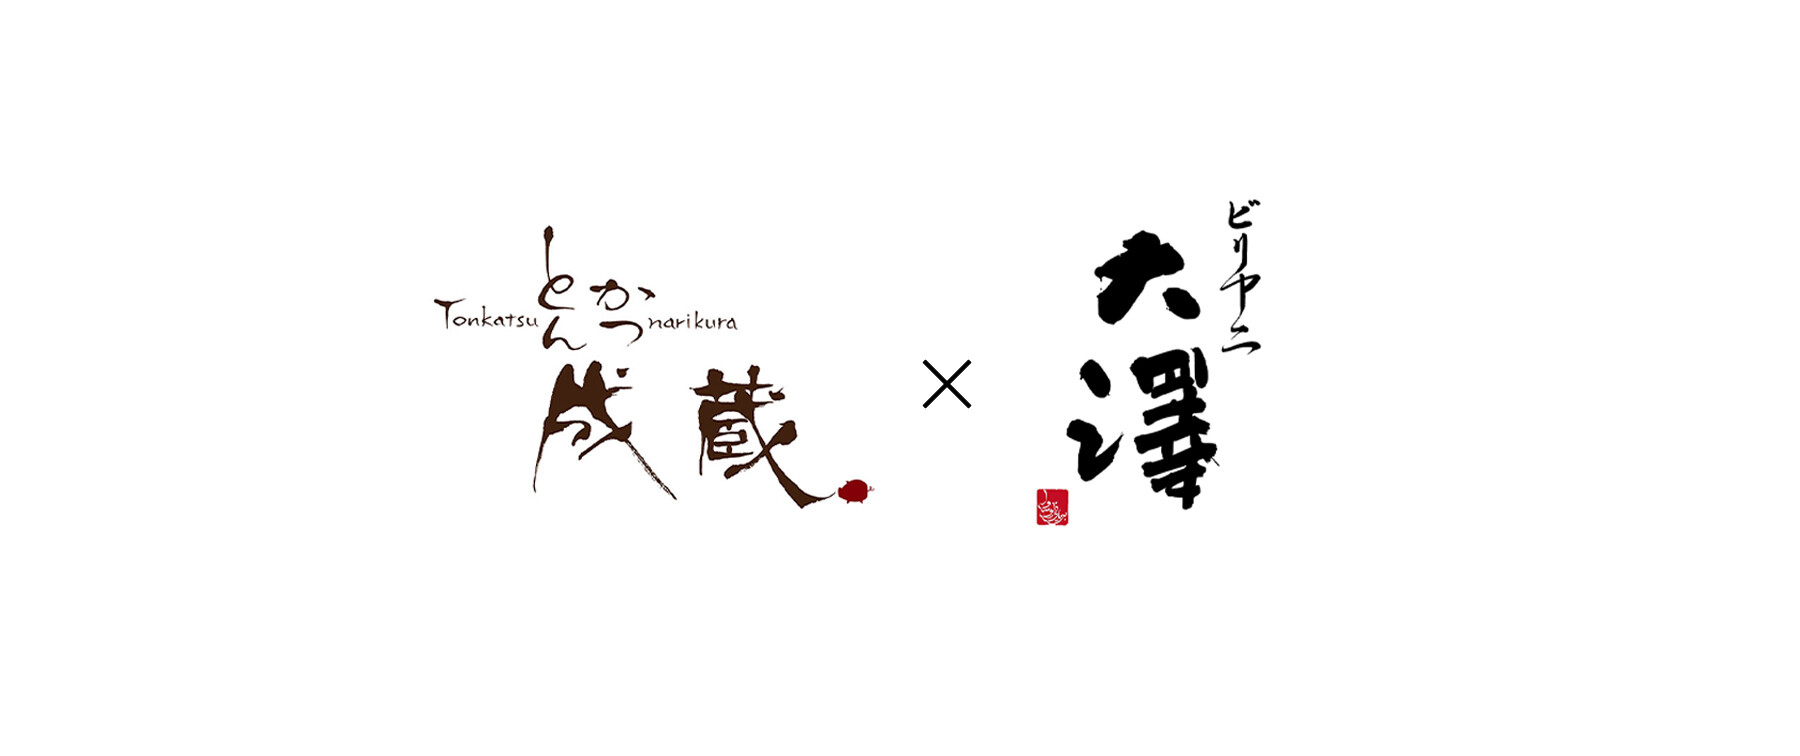 とんかつ成蔵×ビリヤニ大澤のカバー画像